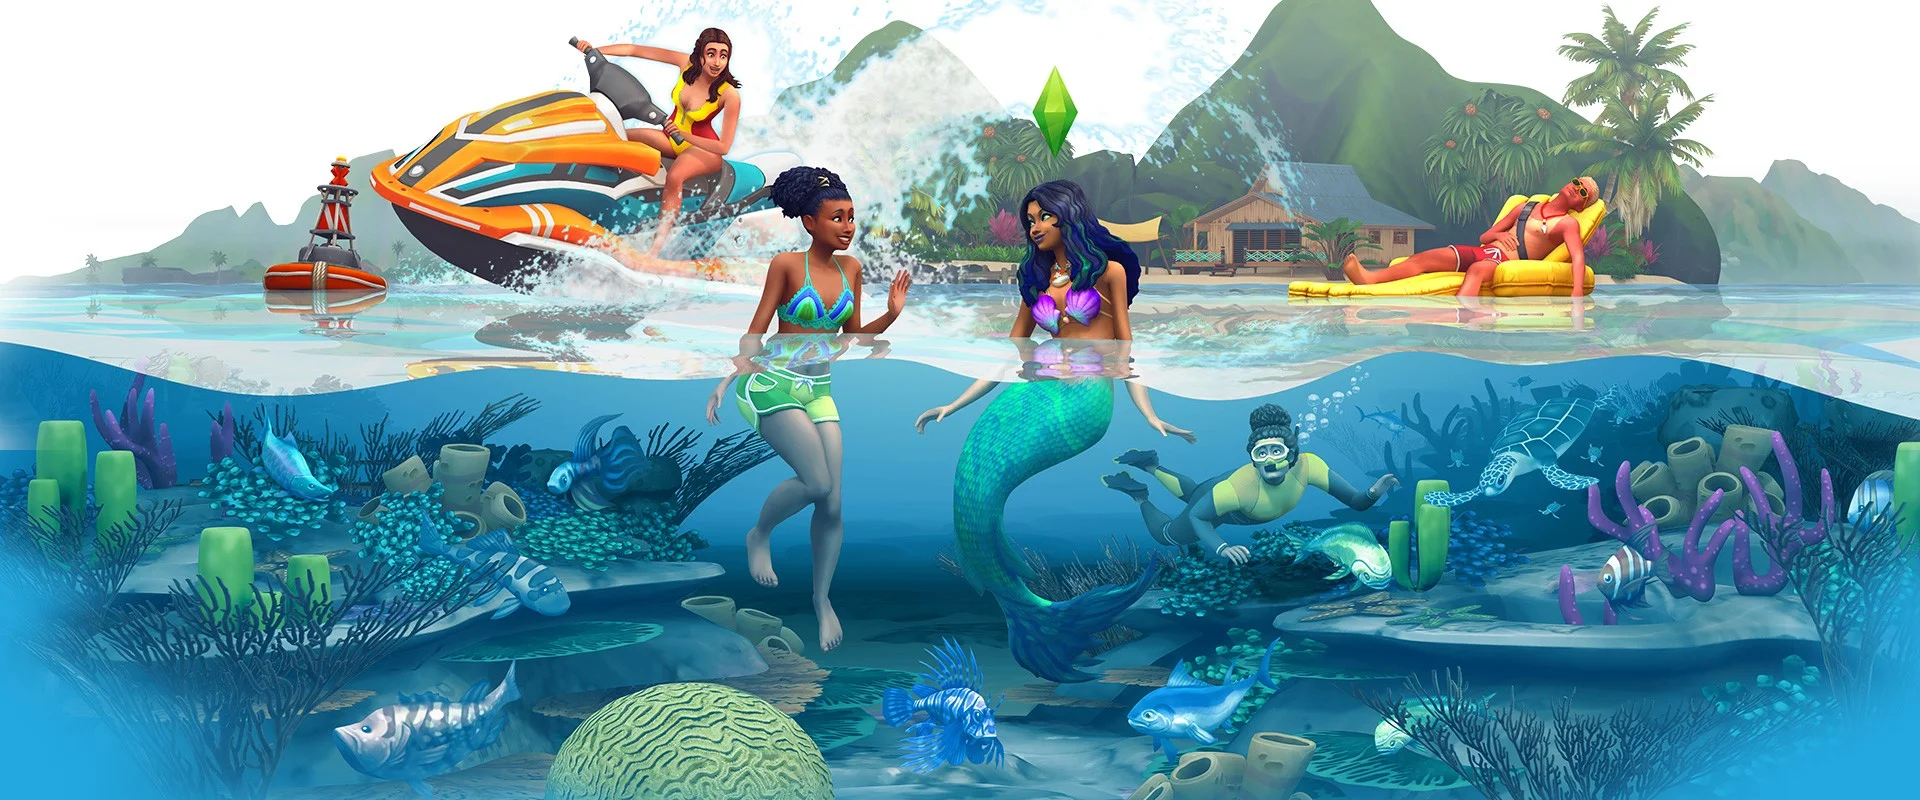 На EA Play для The Sims 4 анонсировали дополнение Island Living - фото 1